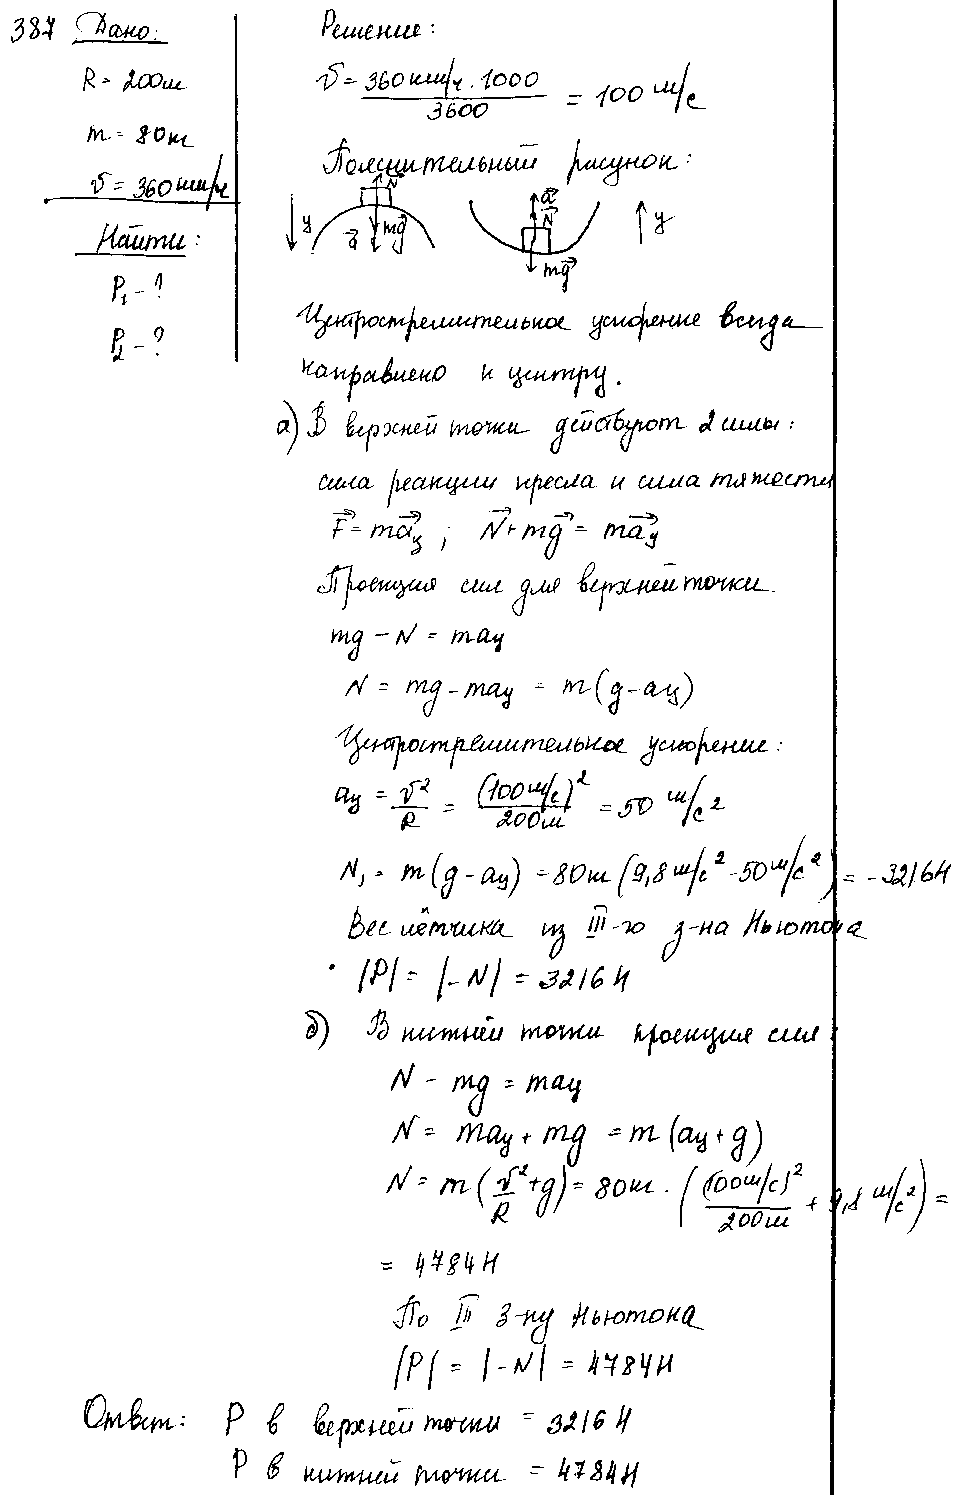 ГДЗ Физика 8 класс - 387